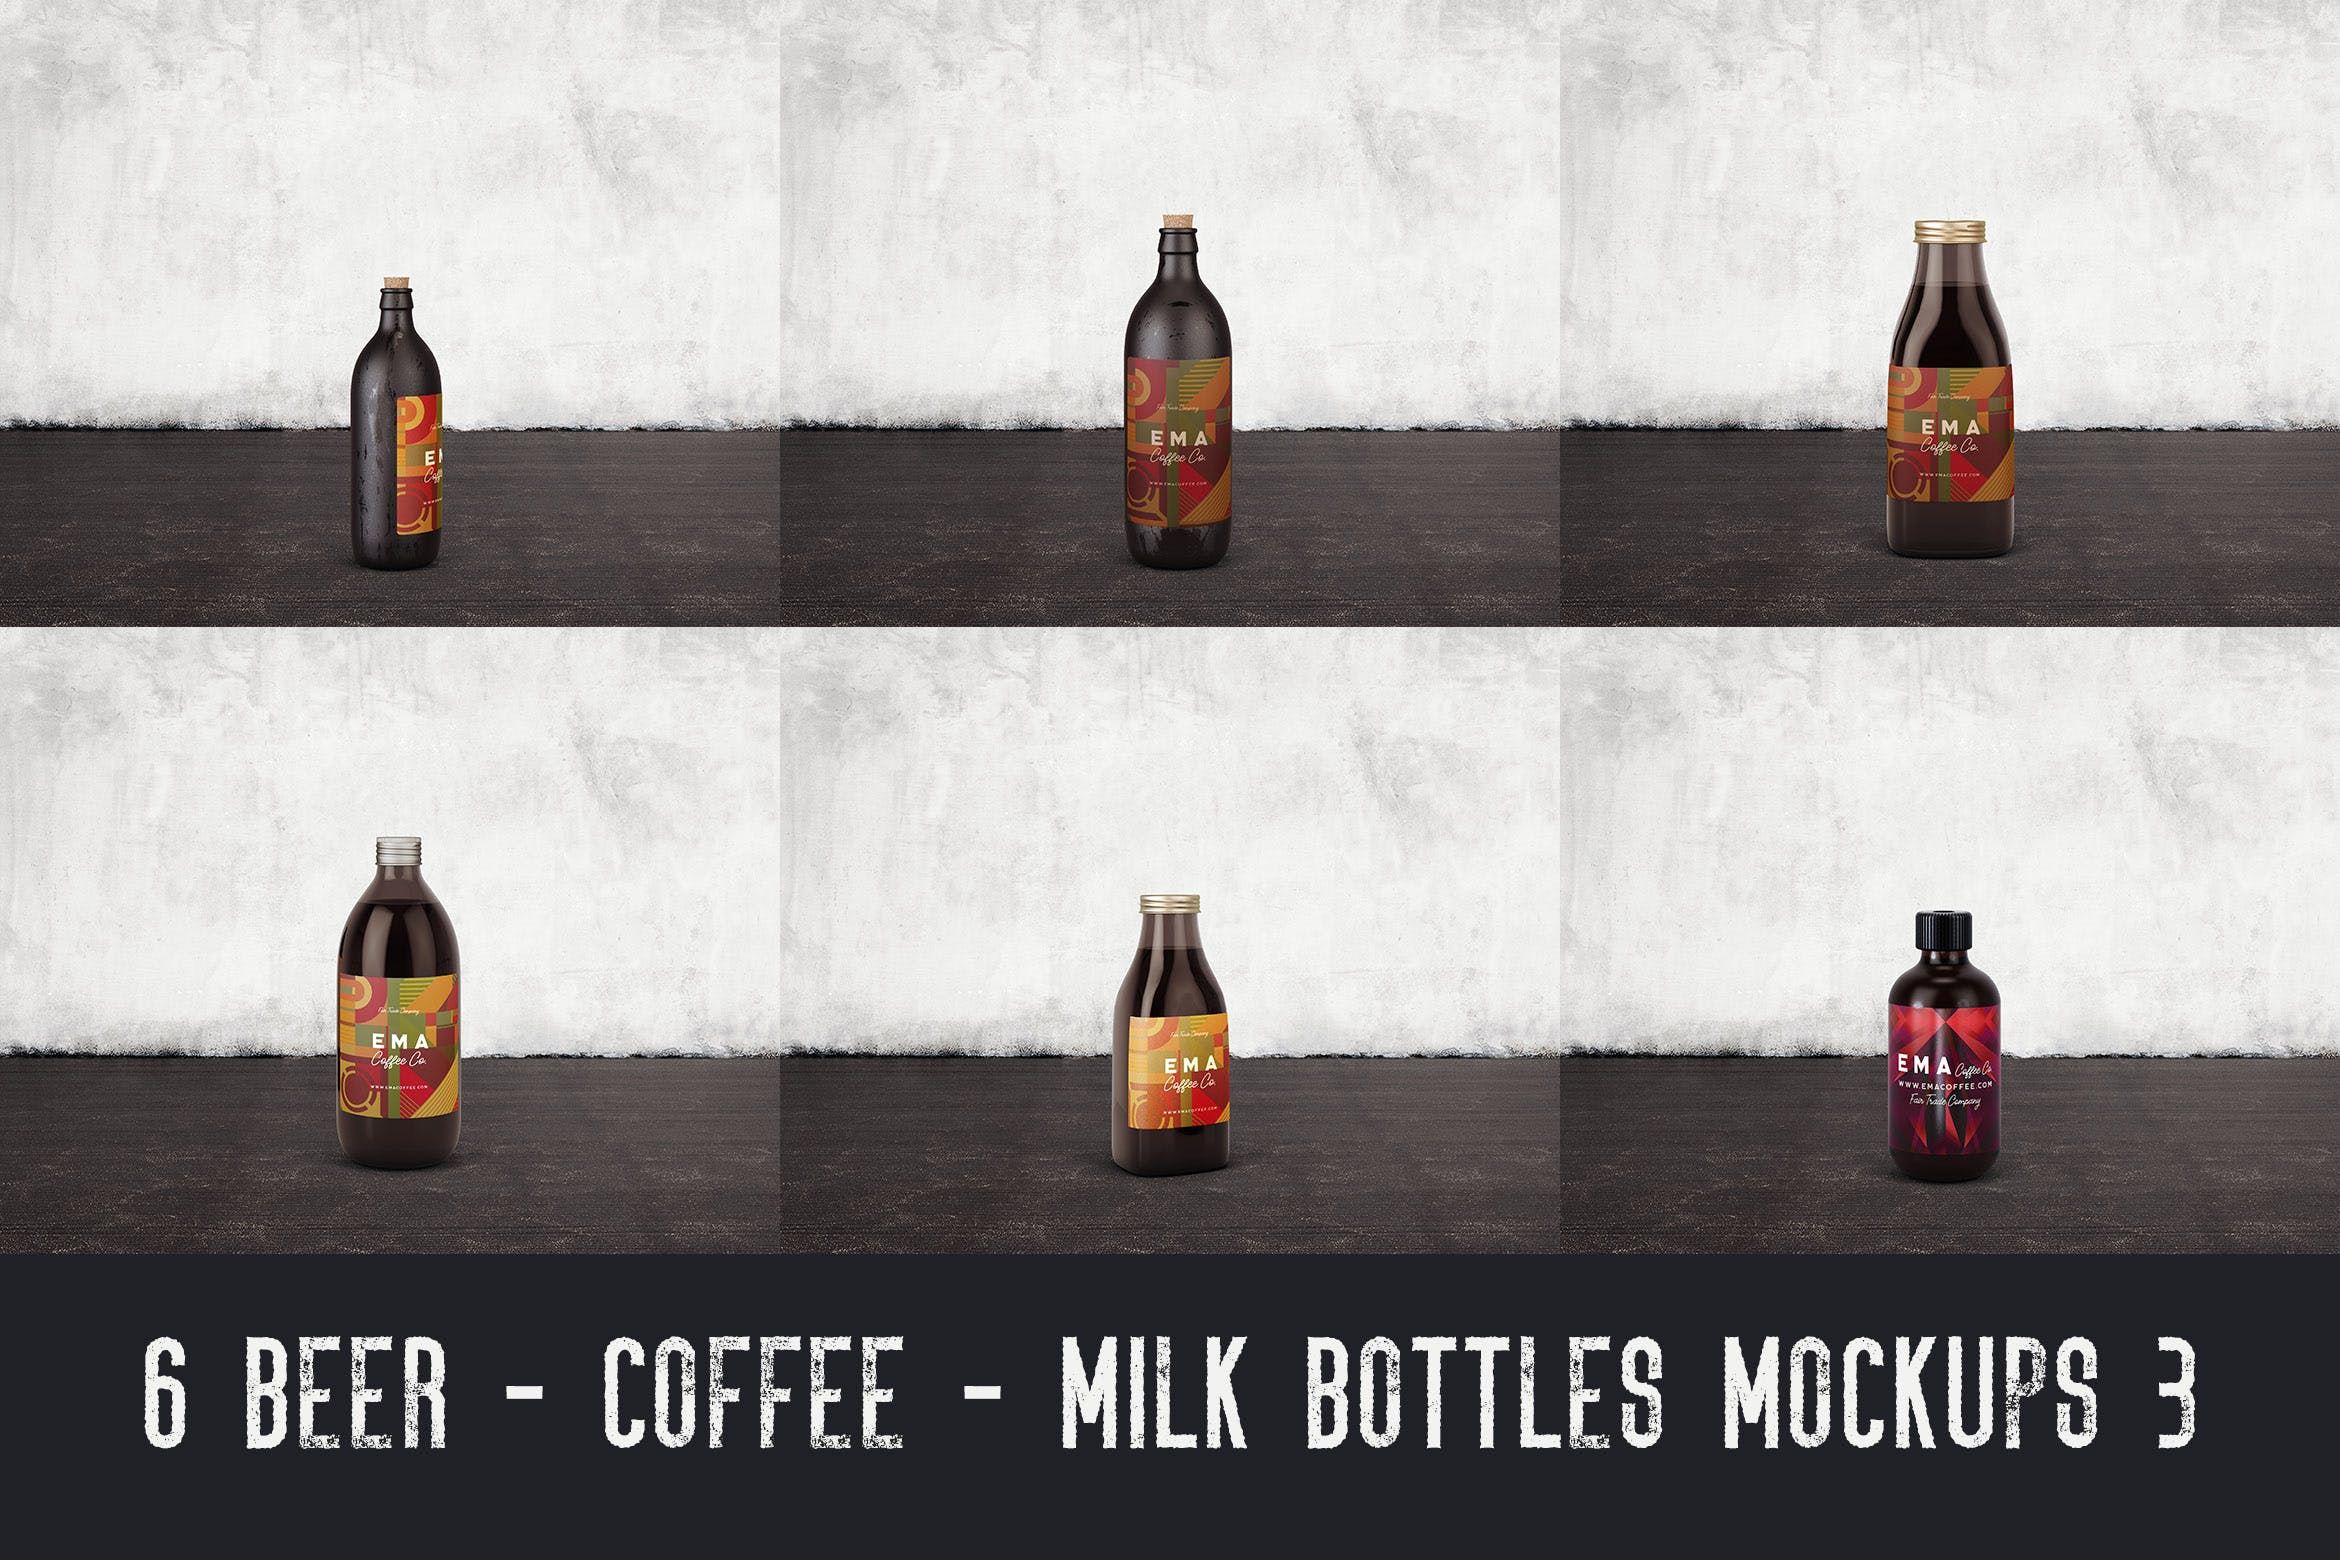 6个啤酒/咖啡/牛奶瓶外观设计非凡图库精选v3 6 Beer Coffee Milk Bottles Mockups 3插图